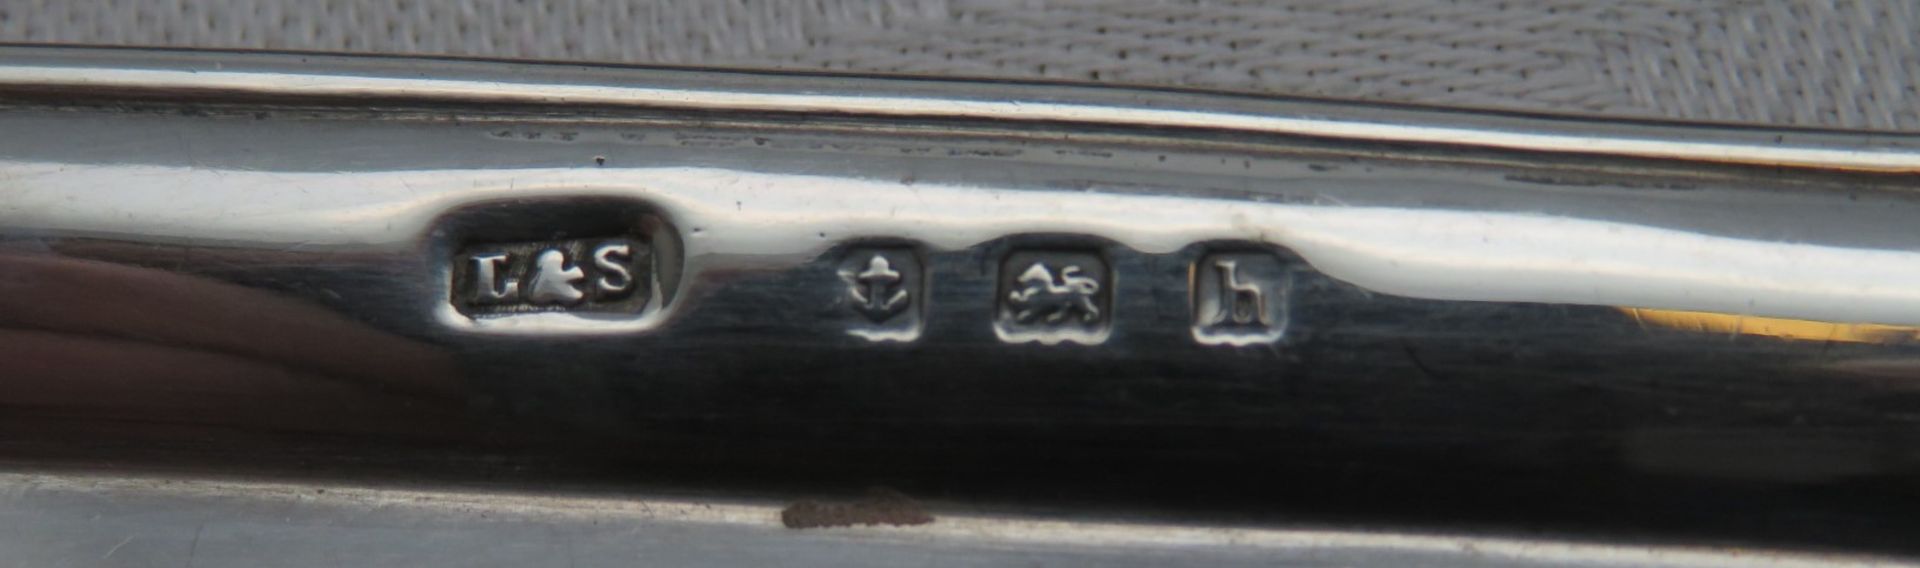 Puppenstubenzubehör/Miniatursilber, England, 11 teiliges Service, Silber 925/000, gepunzt, 63,7 g, - Image 3 of 3